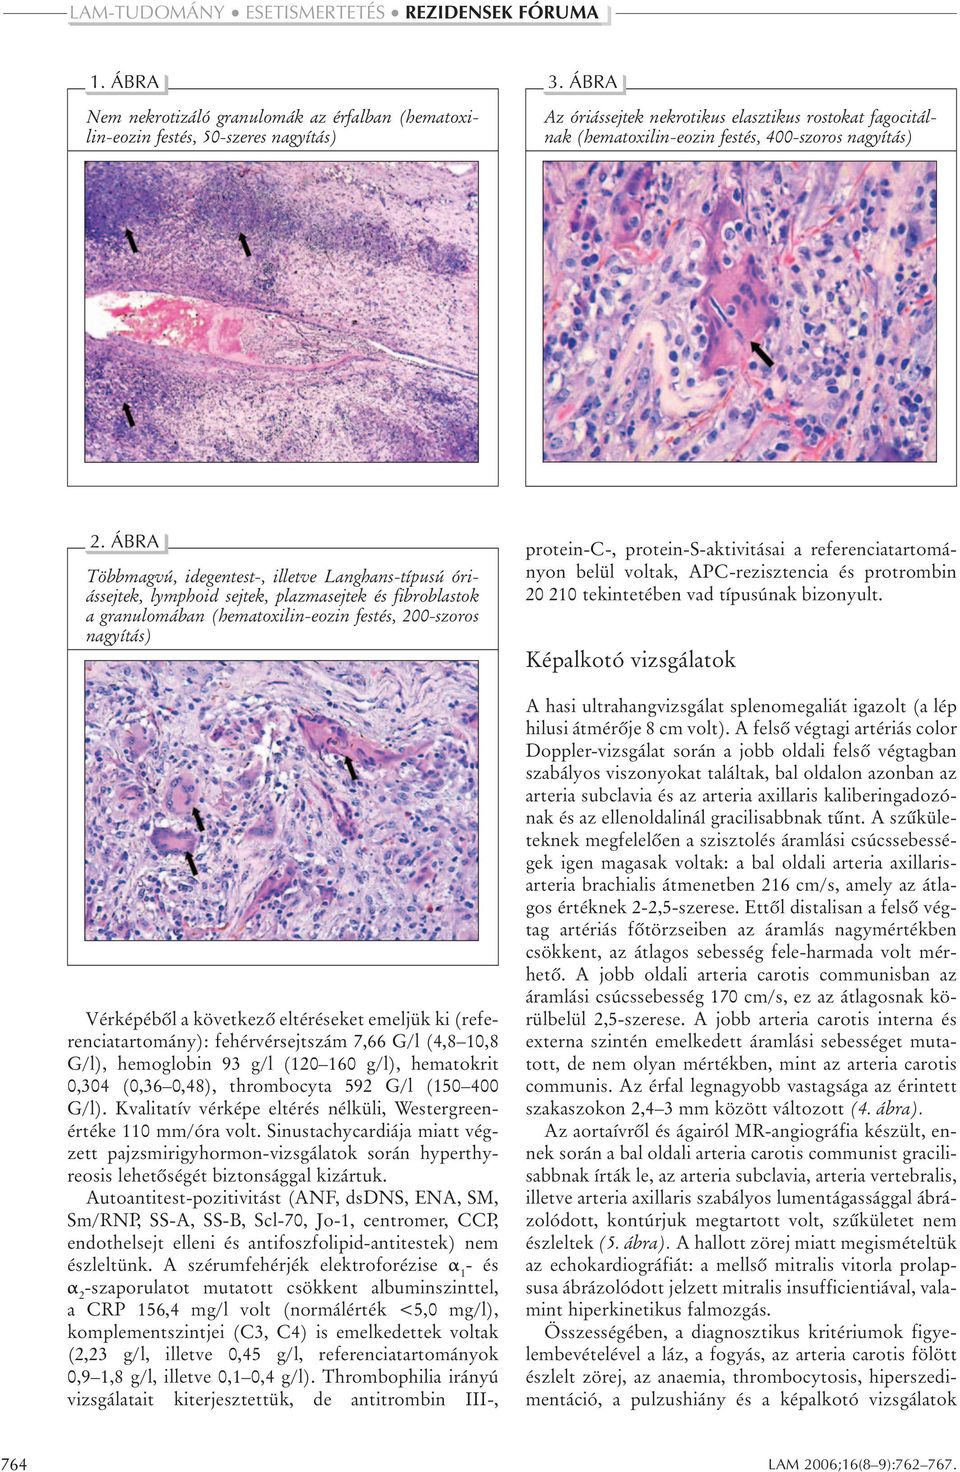 ÁBRA Többmagvú, idegentest-, illetve Langhans-típusú óriássejtek, lymphoid sejtek, plazmasejtek és fibroblastok a granulomában (hematoxilin-eozin festés, 200-szoros nagyítás) Vérképébôl a következô